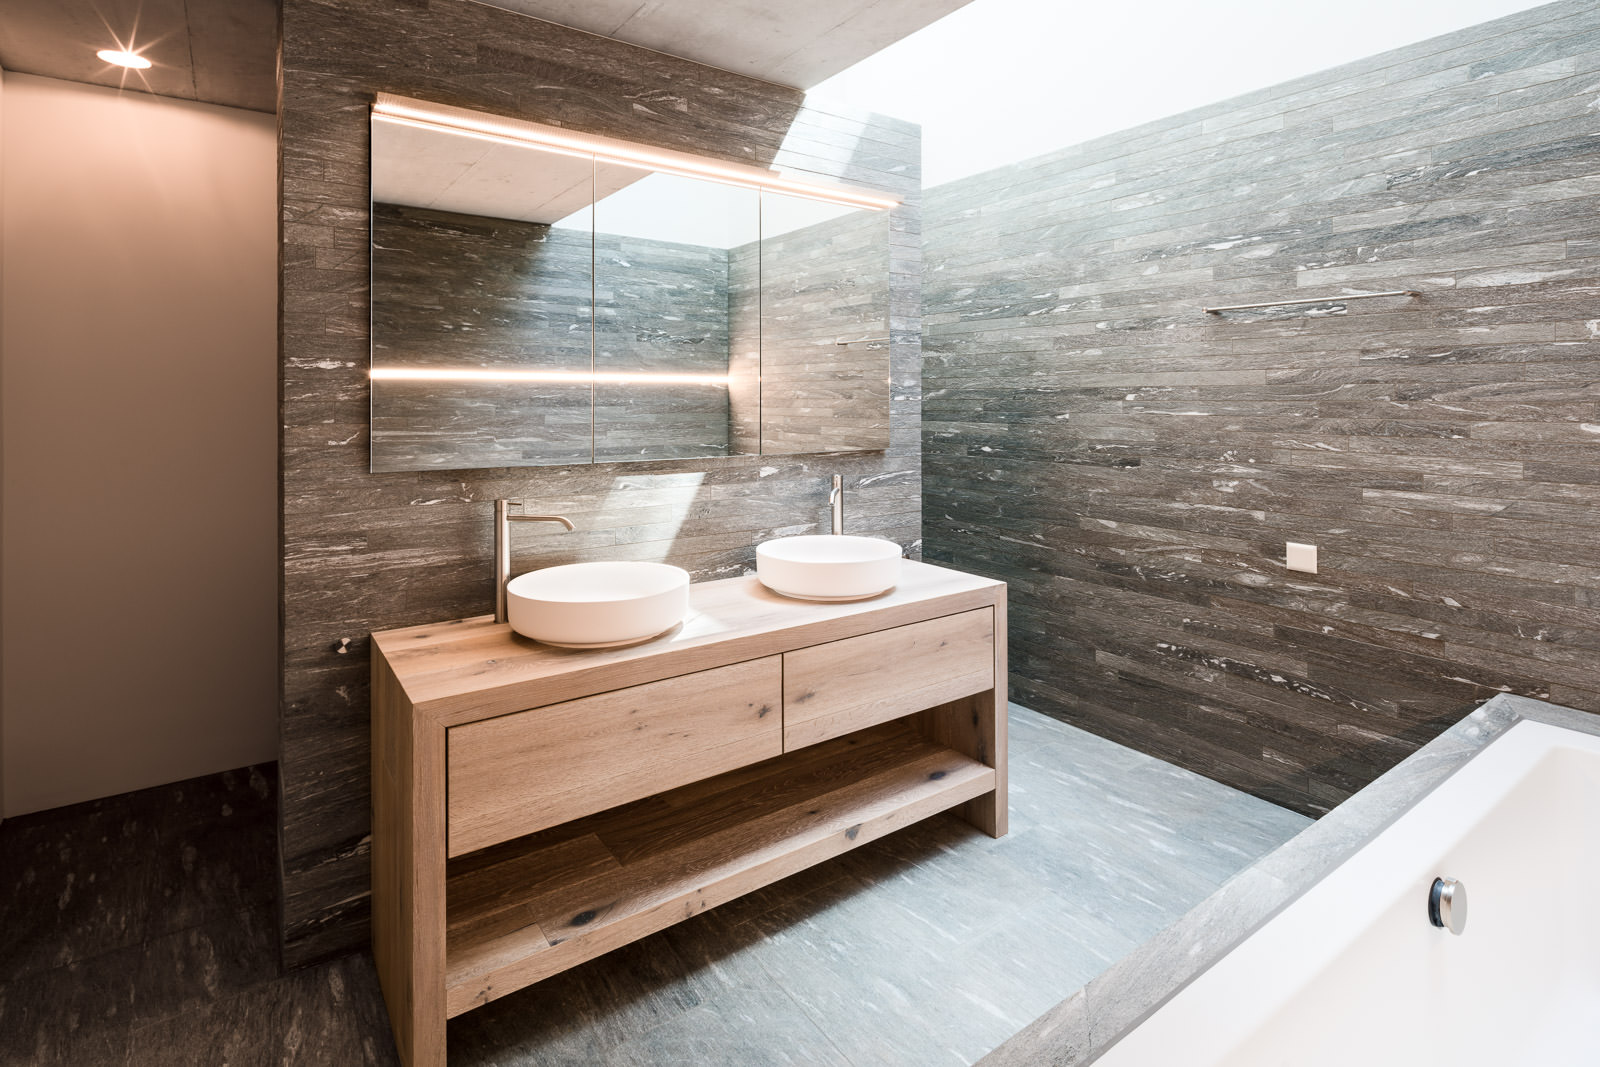 Hochwertige Badezimmer- und Interieur-Architektur - Immobilienfotos